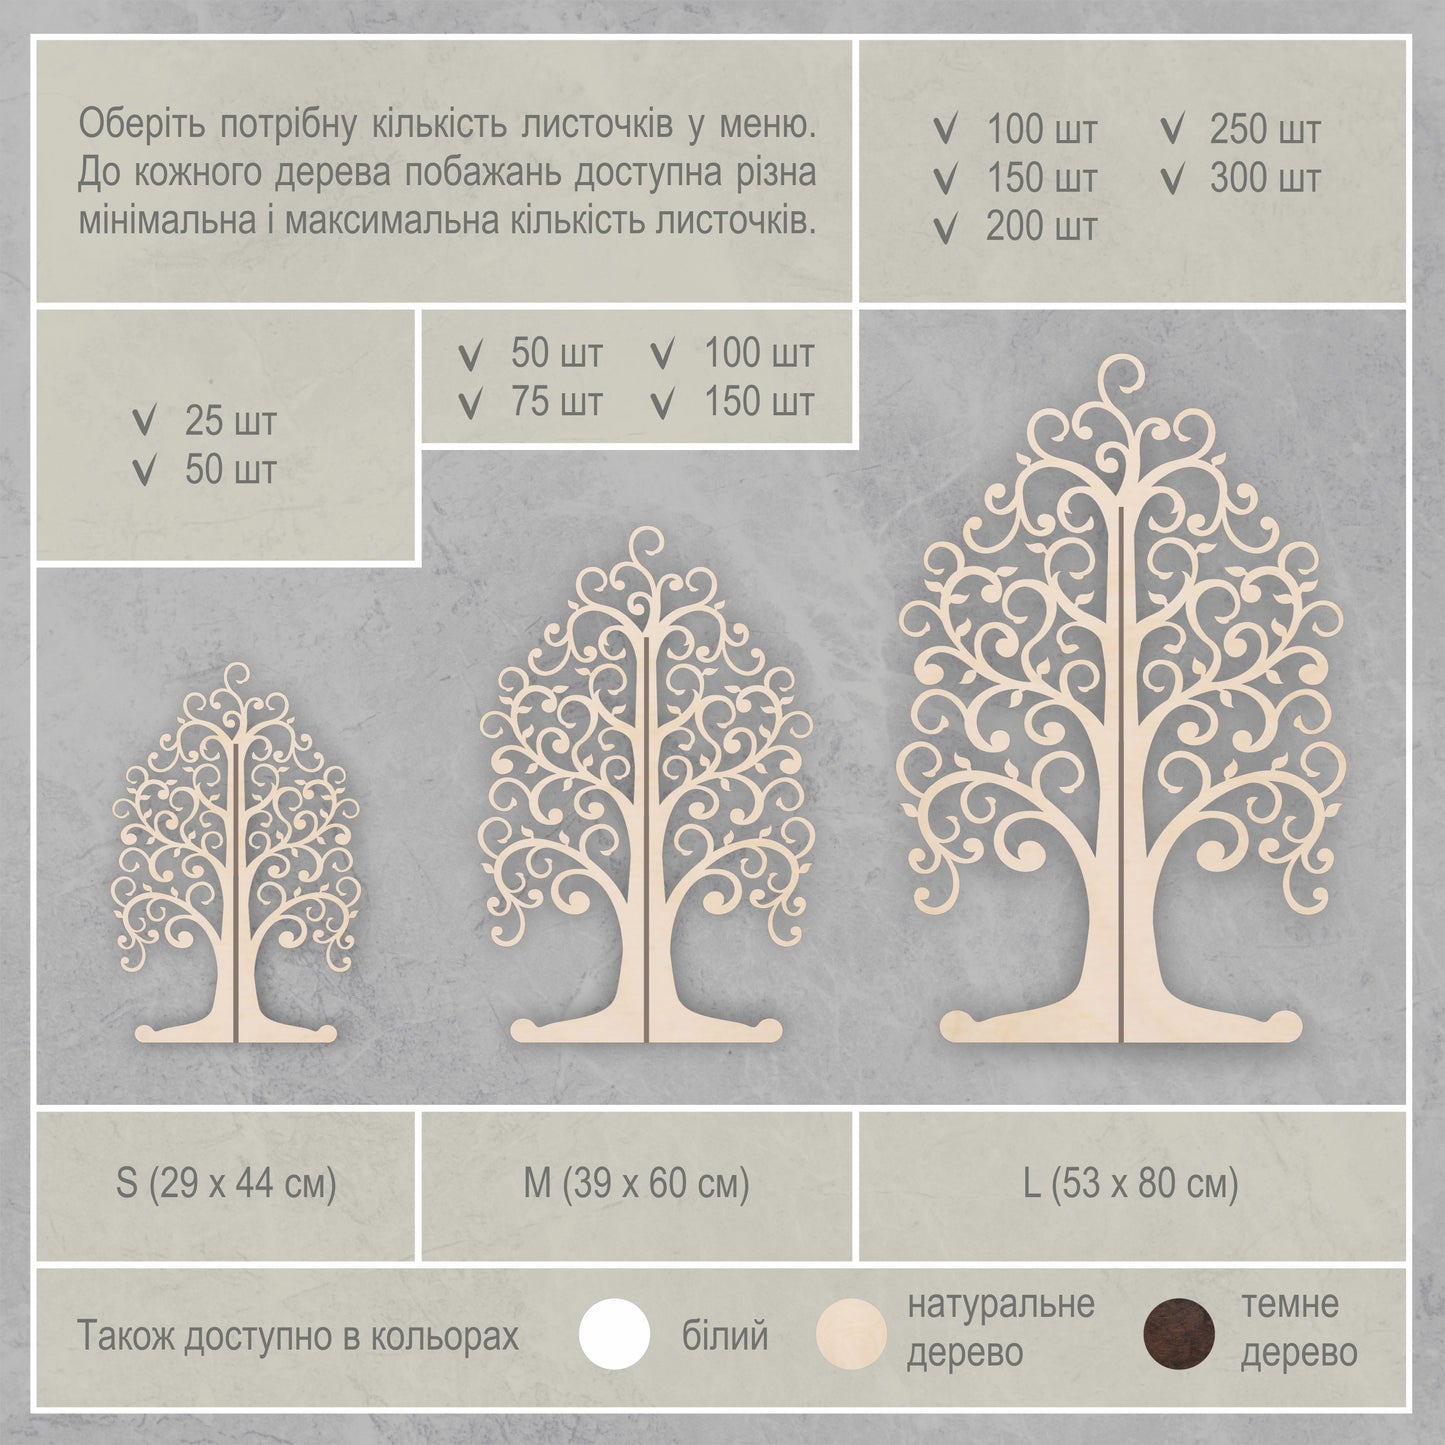 Дерево побажань кольору натуральне дерево листочками - шестикутниками wt0102